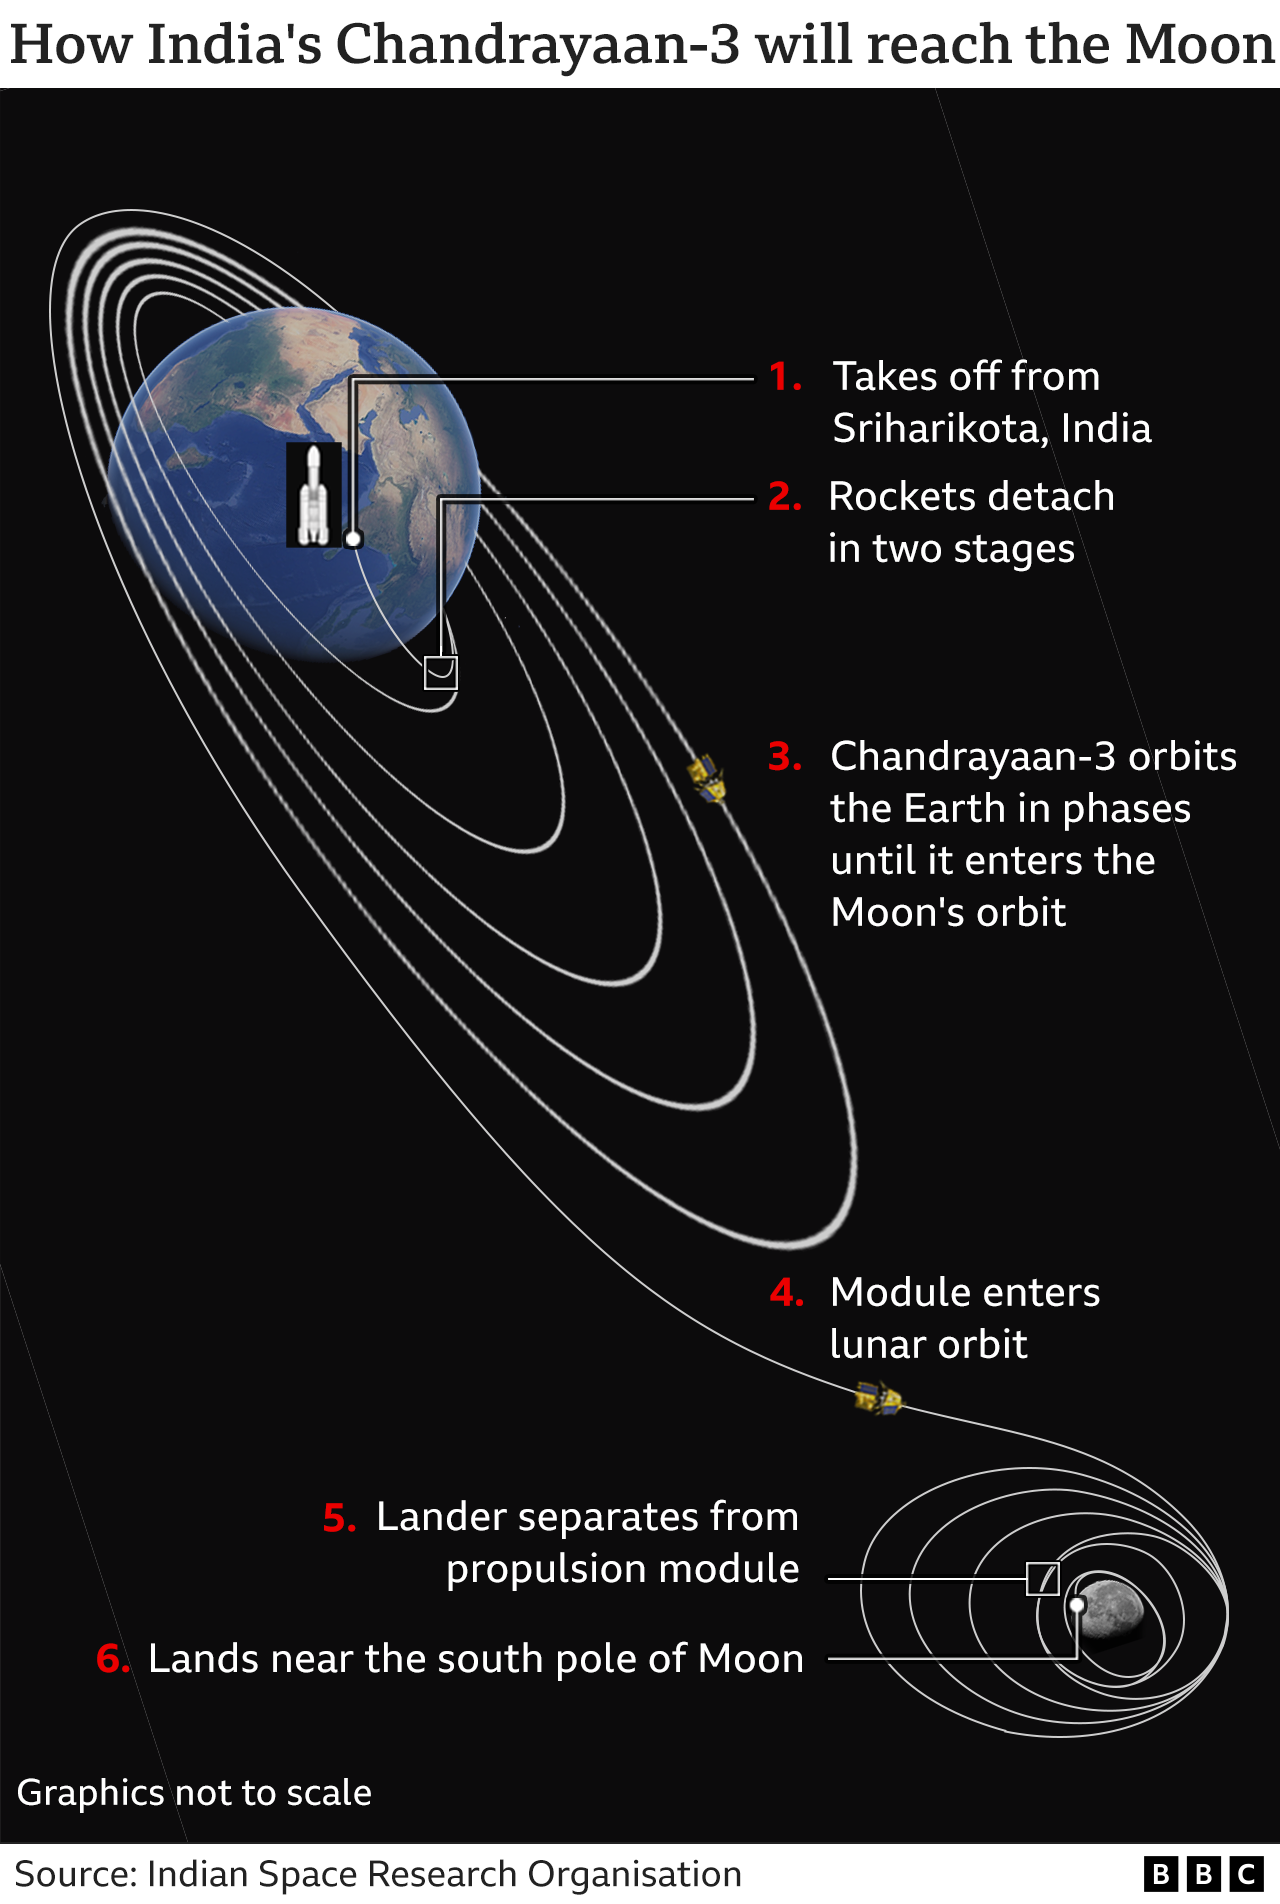 Рисунок, показывающий, как Chandrayaan-3 доберется до Луны, от взлета до обращения вокруг Земли в фазах, пока он не достигнет орбиты Луны, когда посадочный модуль отделится от двигательного модуля перед посадкой вблизи южного полюса Луны | ||